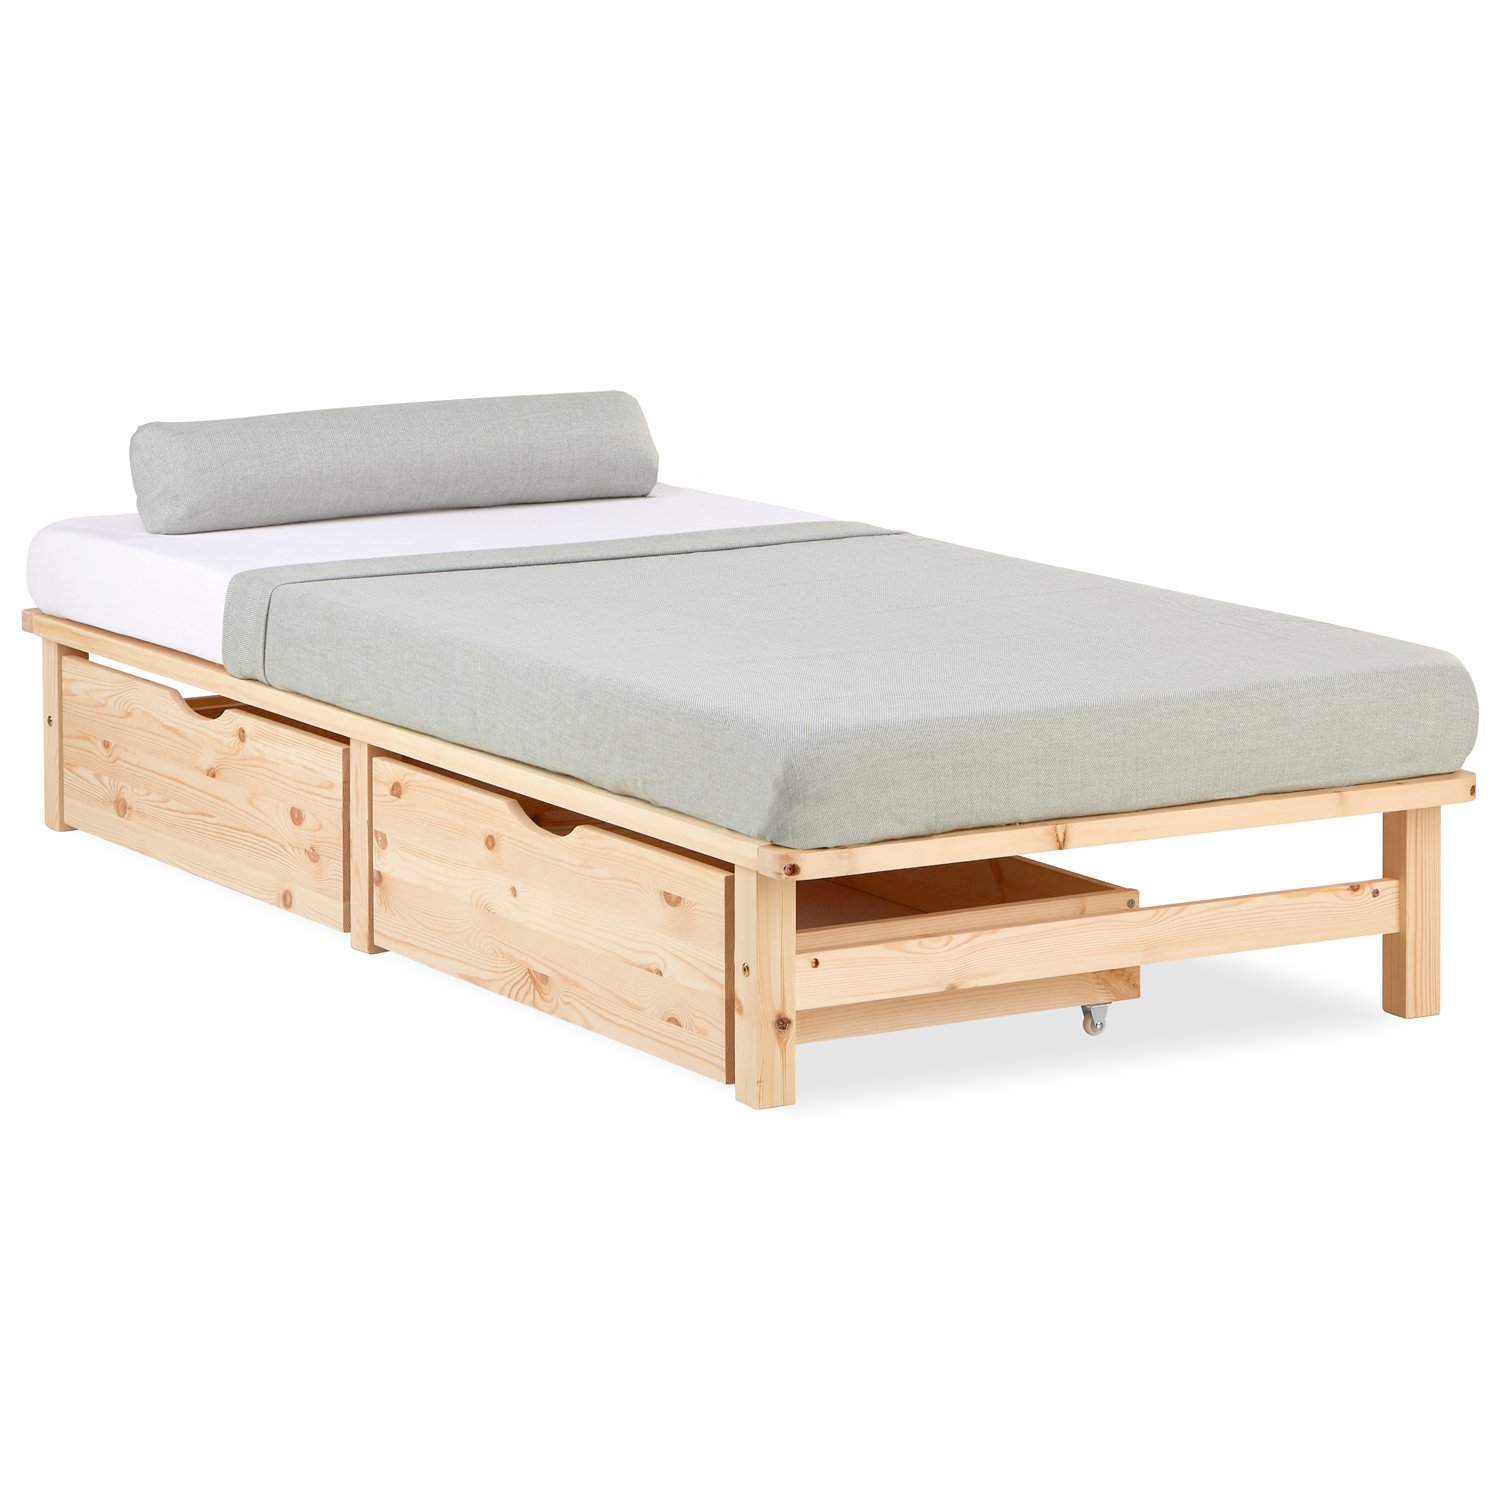 Palettenbett 90x200 cm mit Bettkasten 2er Set Lattenrost Holzbett Natur Palettenmöbel Bett